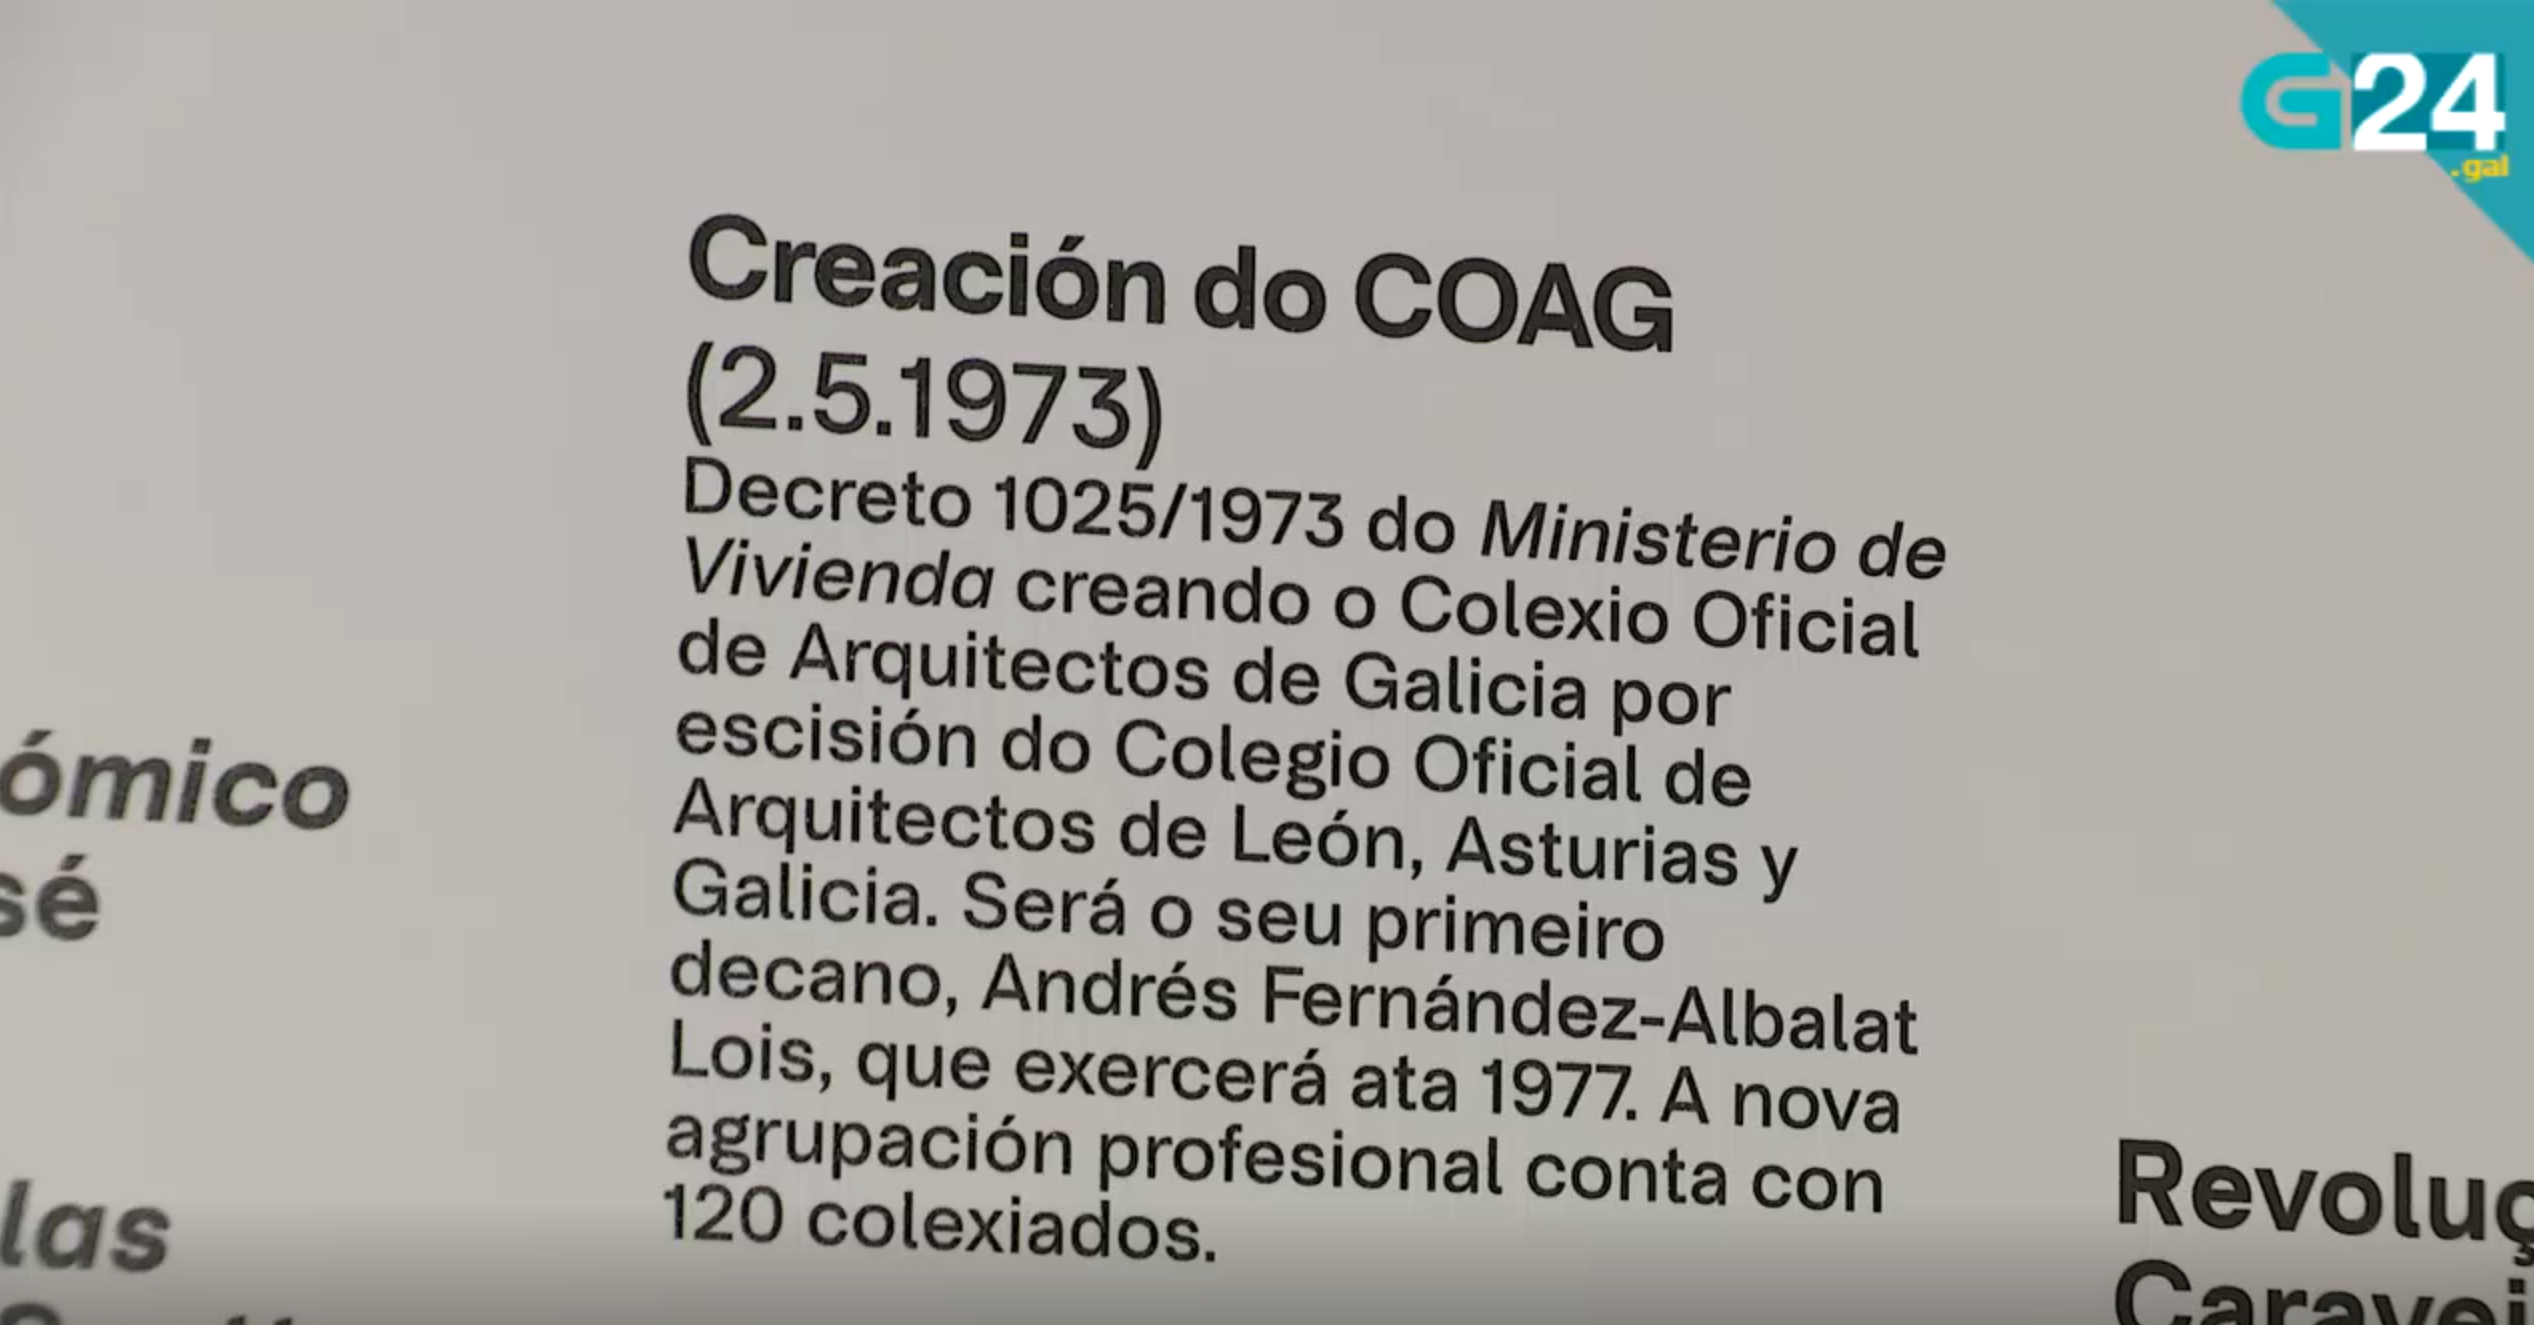 Reportaje en la TVG sobre los 50 años del Colexio Oficial de Arquitectos de Galicia